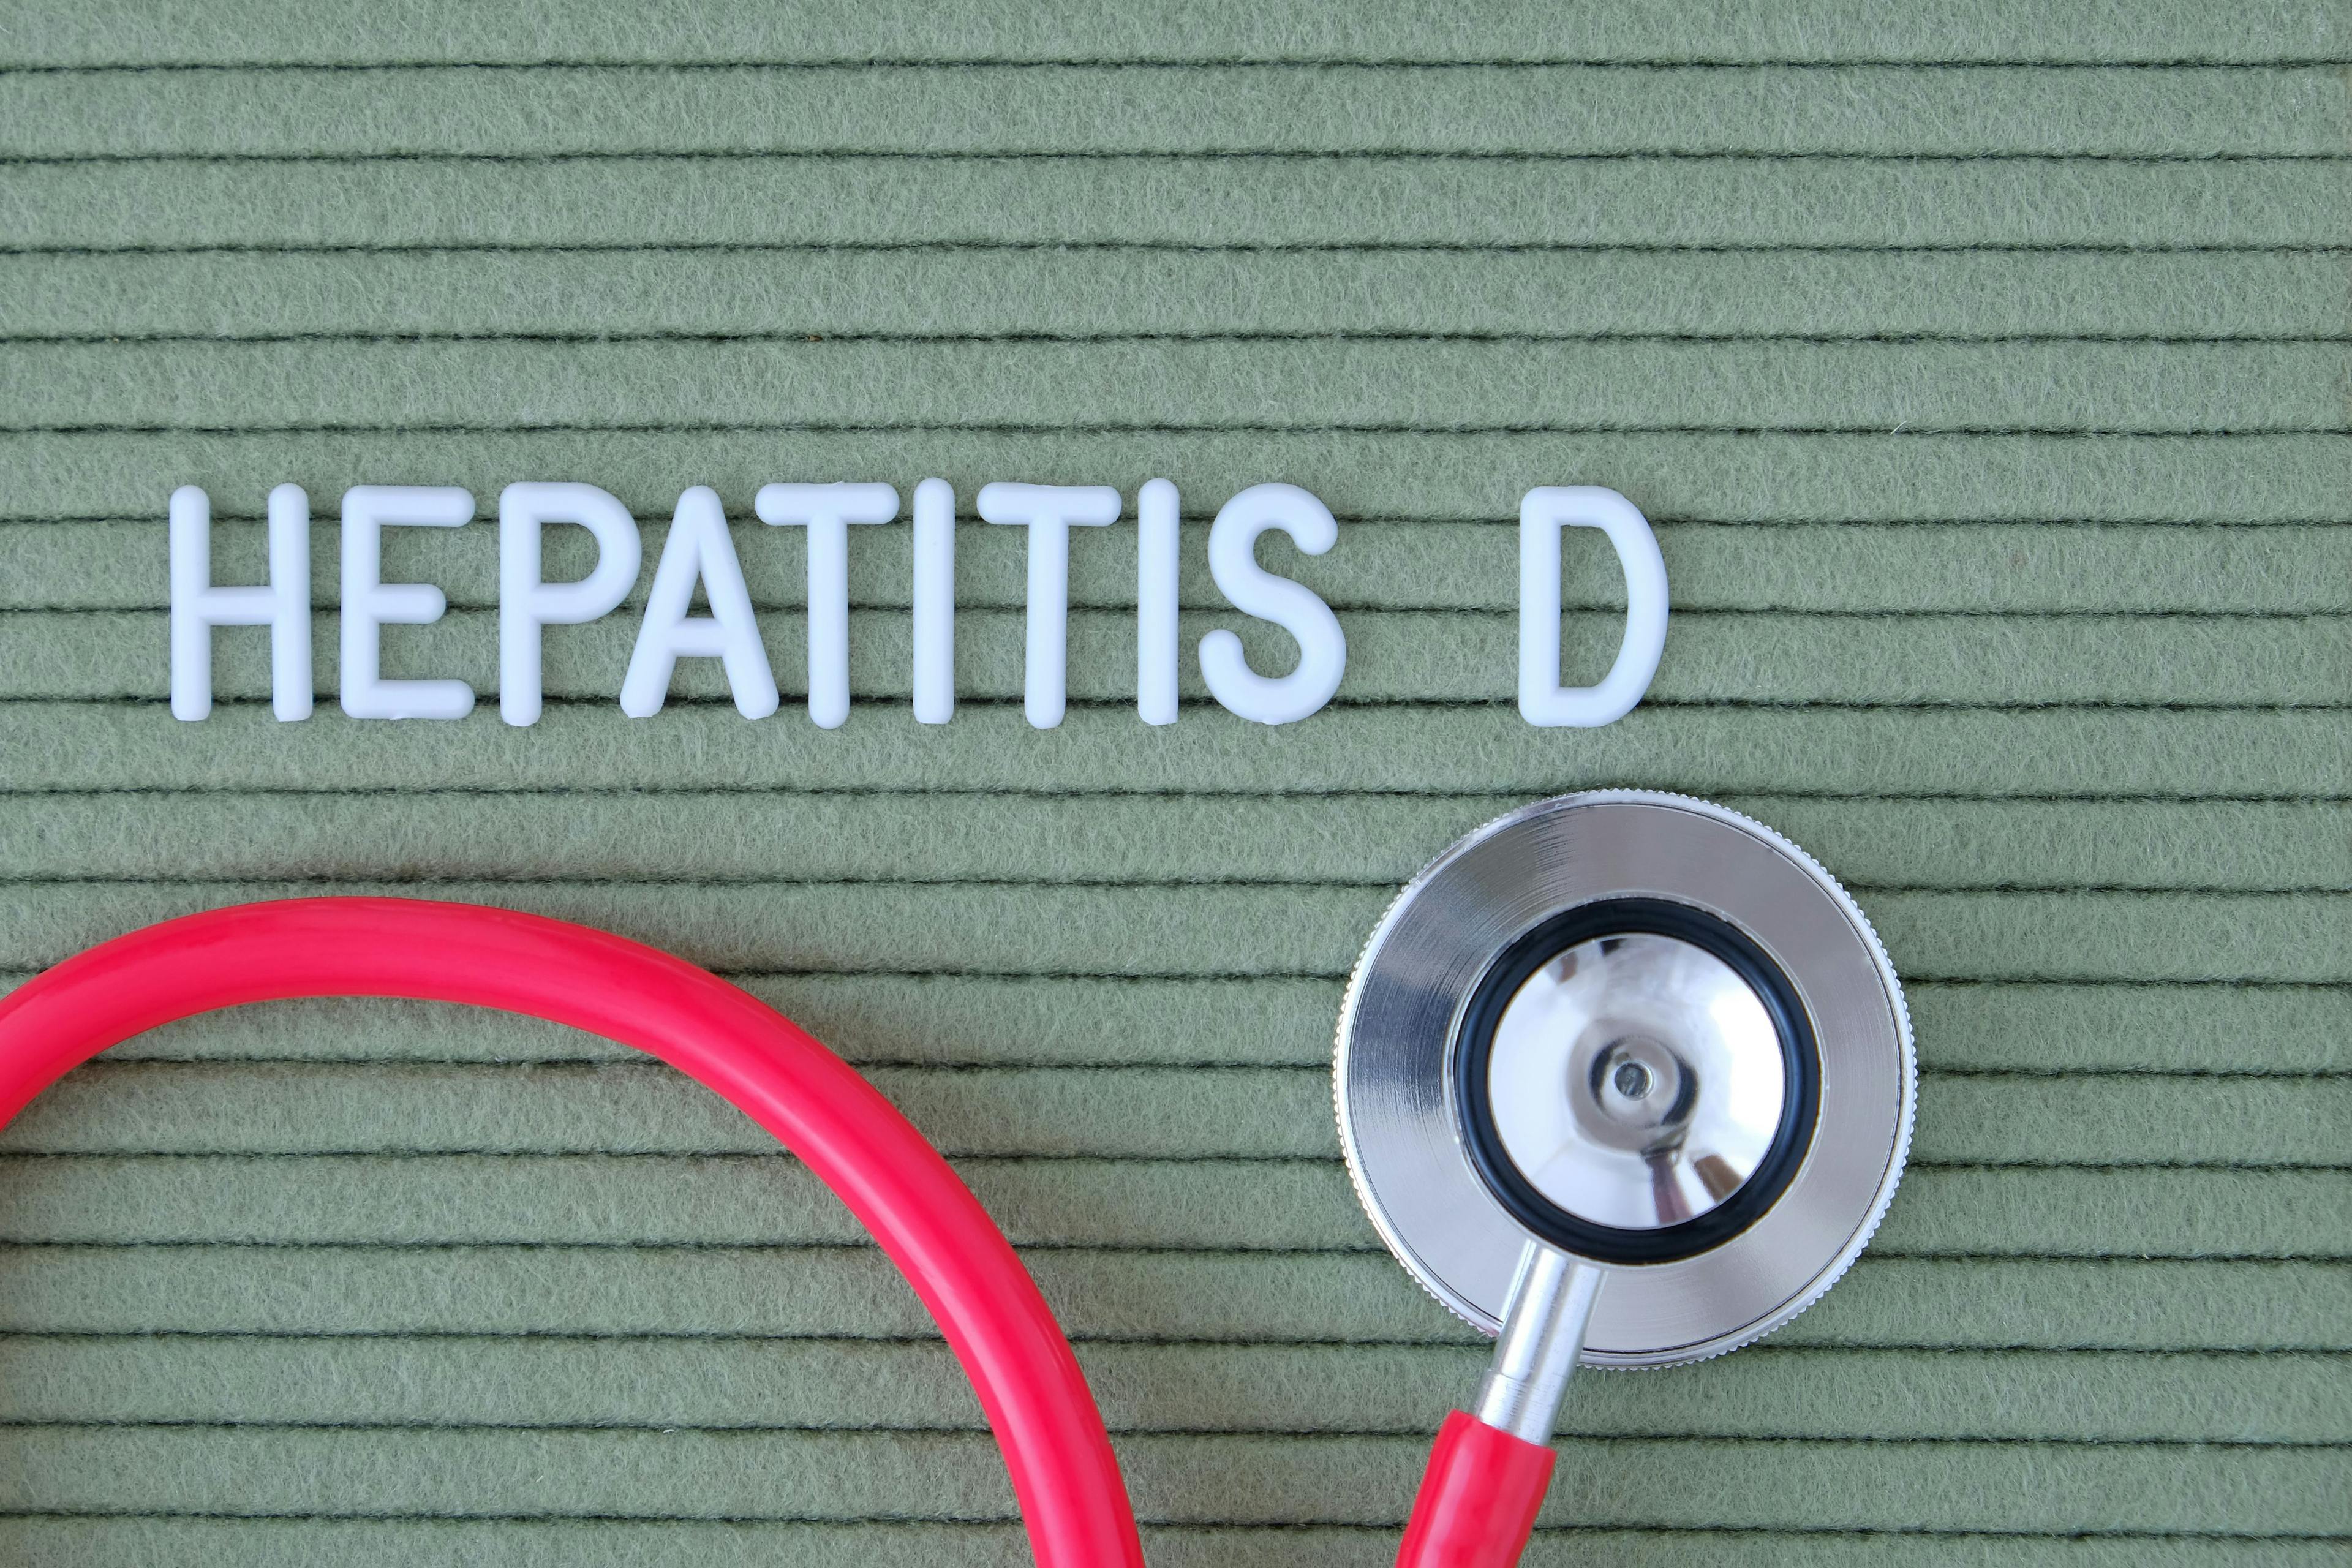 Hepatitis D Elimination: Progress, Opportunities, and Challenges